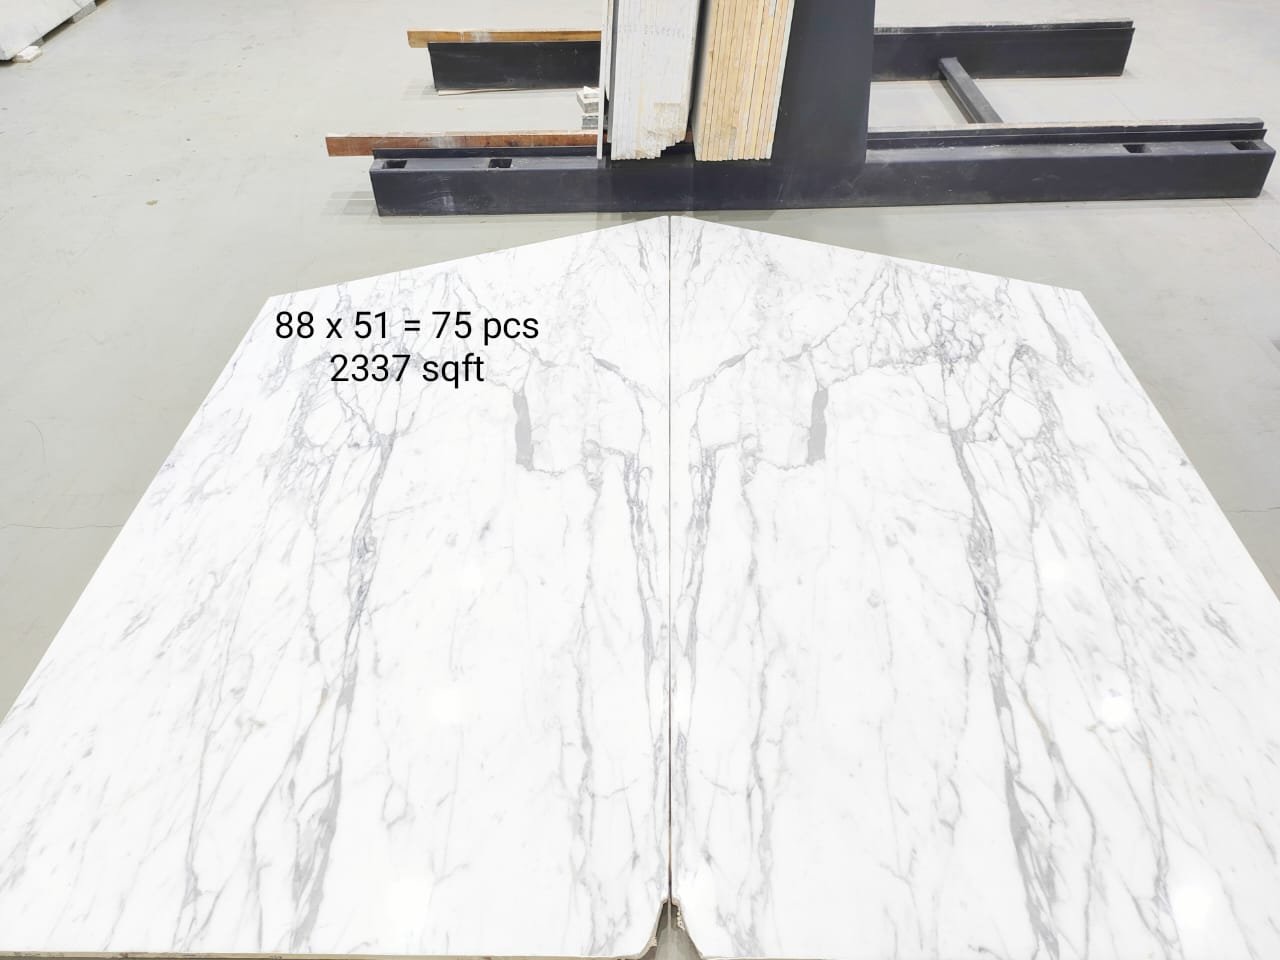 new white statuario marble